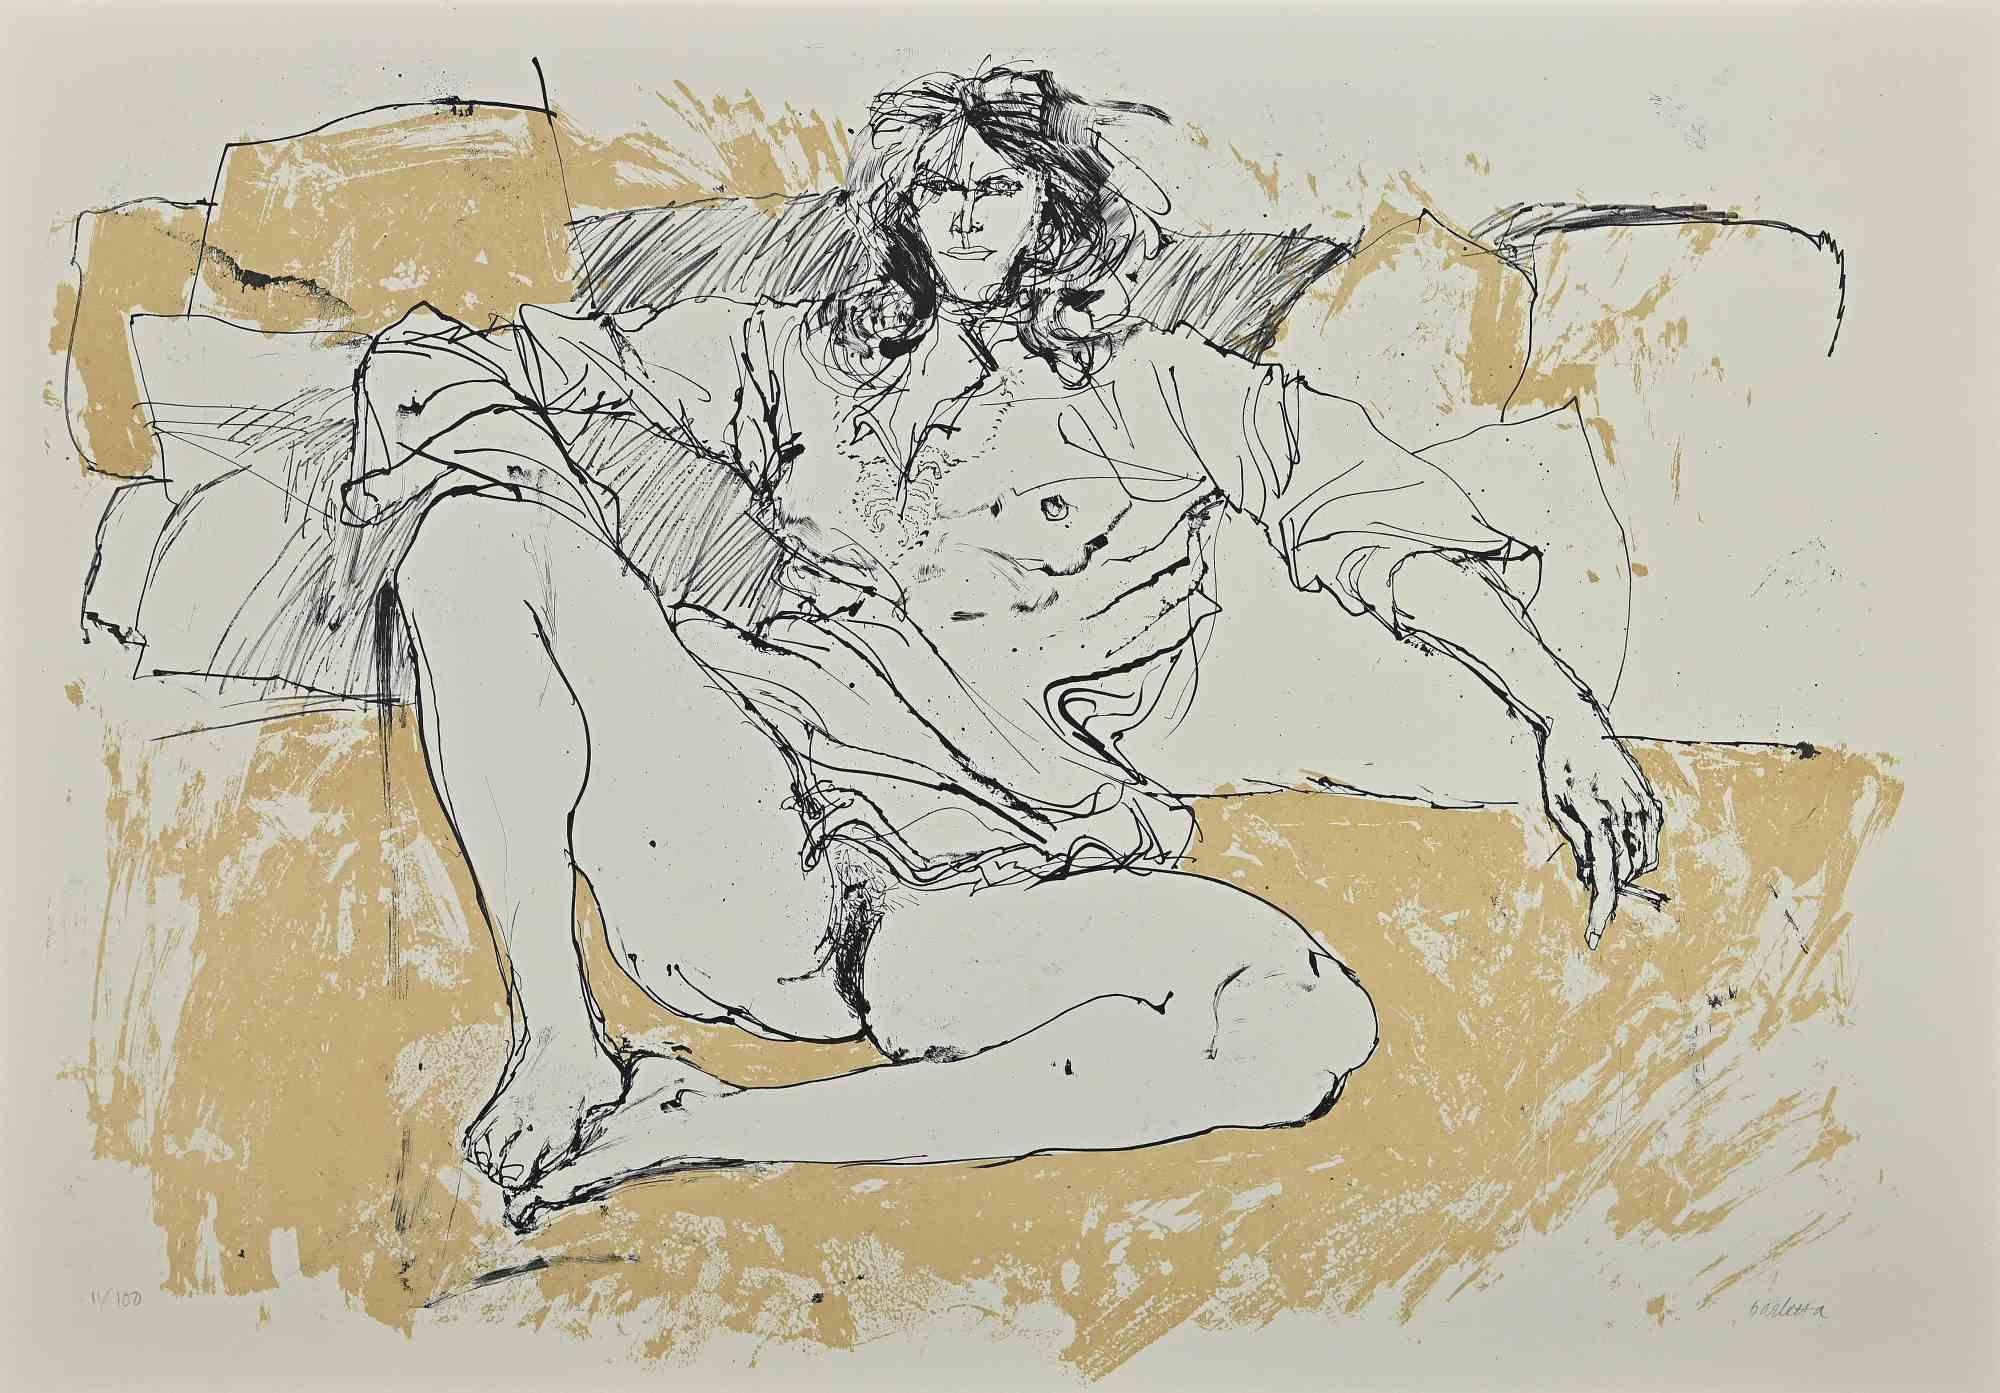 Nude ist eine Lithographie auf Papier aus dem Jahr 1980 von Sergio Barletta.
Rechts unten mit Bleistift handsigniert. Aus der Auflage von 100 Exemplaren. Links unten mit Bleistift nummeriert.
In gutem Zustand.
Das Kunstwerk stellt einen liegenden